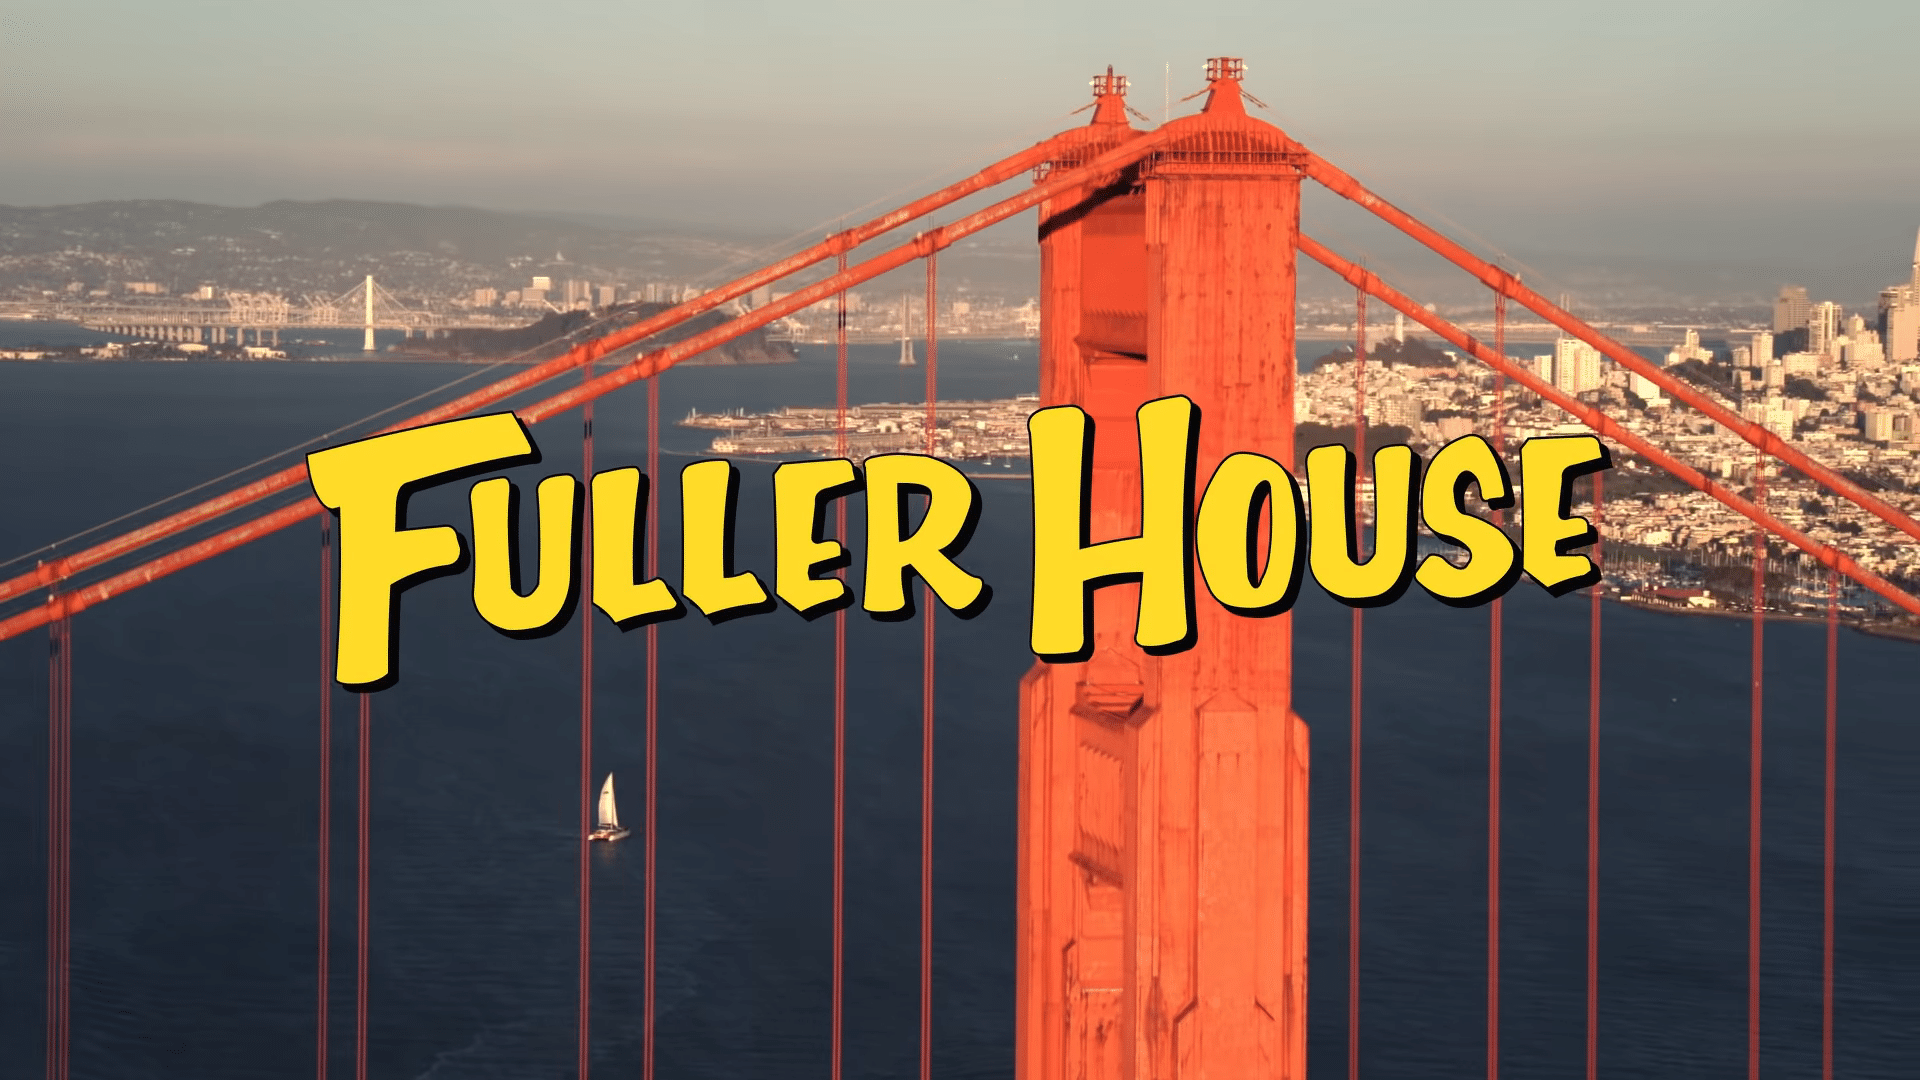 Fuller House Season 5 PART A Netflix Trailer, Netflix Family Shows, Netflix Comedy Series, Coming to Netflix in December 2019